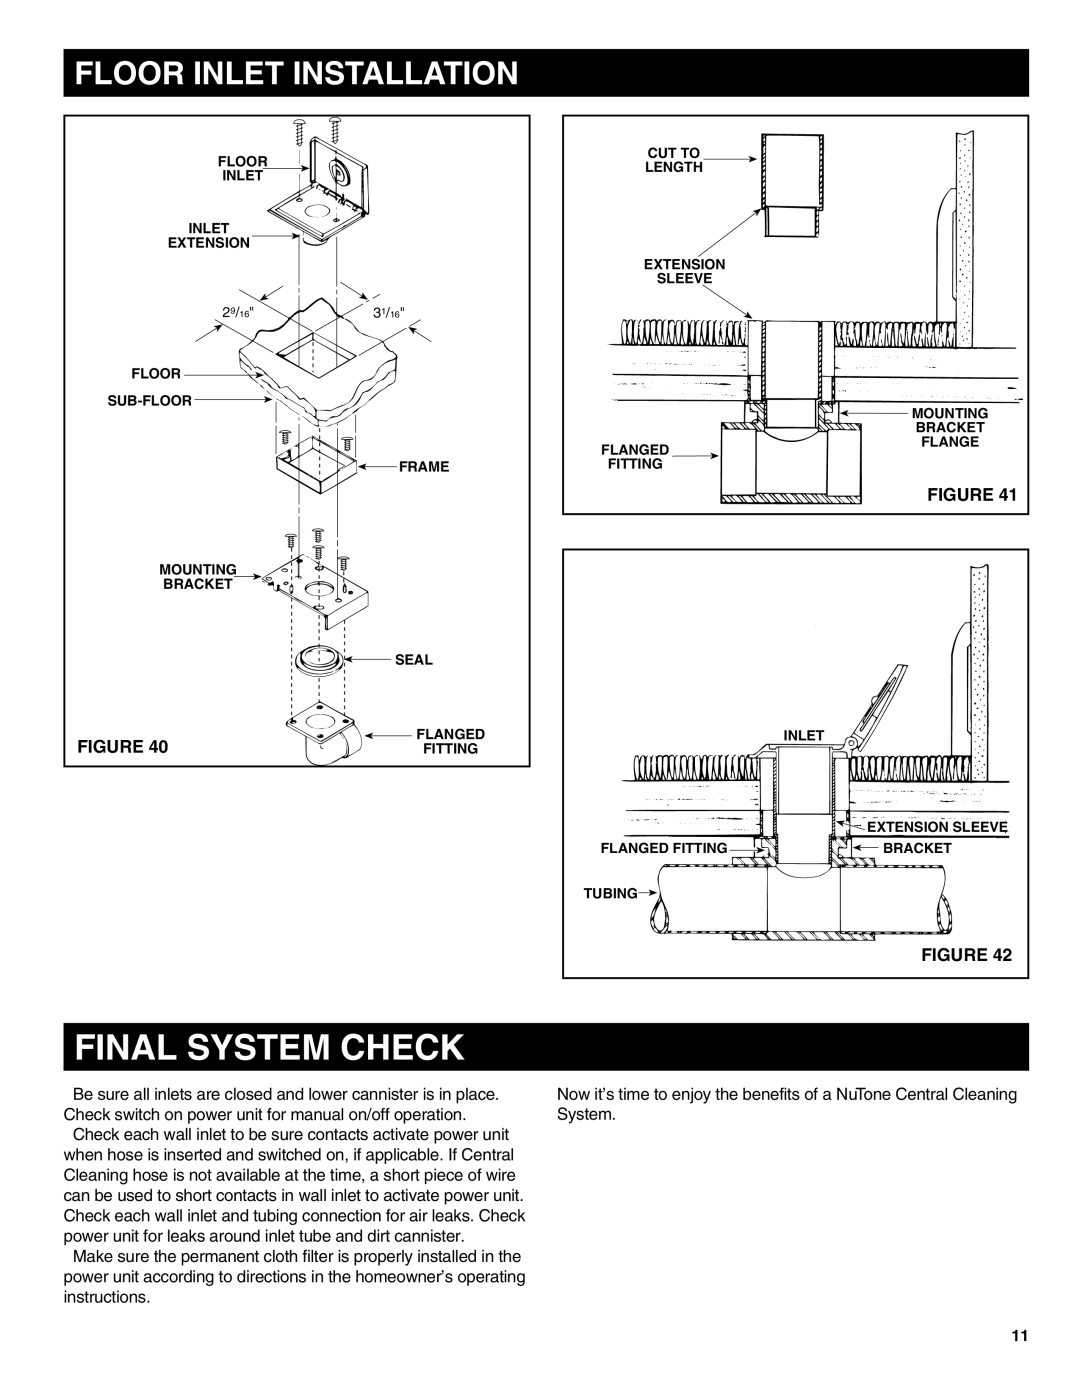 NuTone CV556, CV554, CV570 installation instructions Final System Check, Floor Inlet Installation 